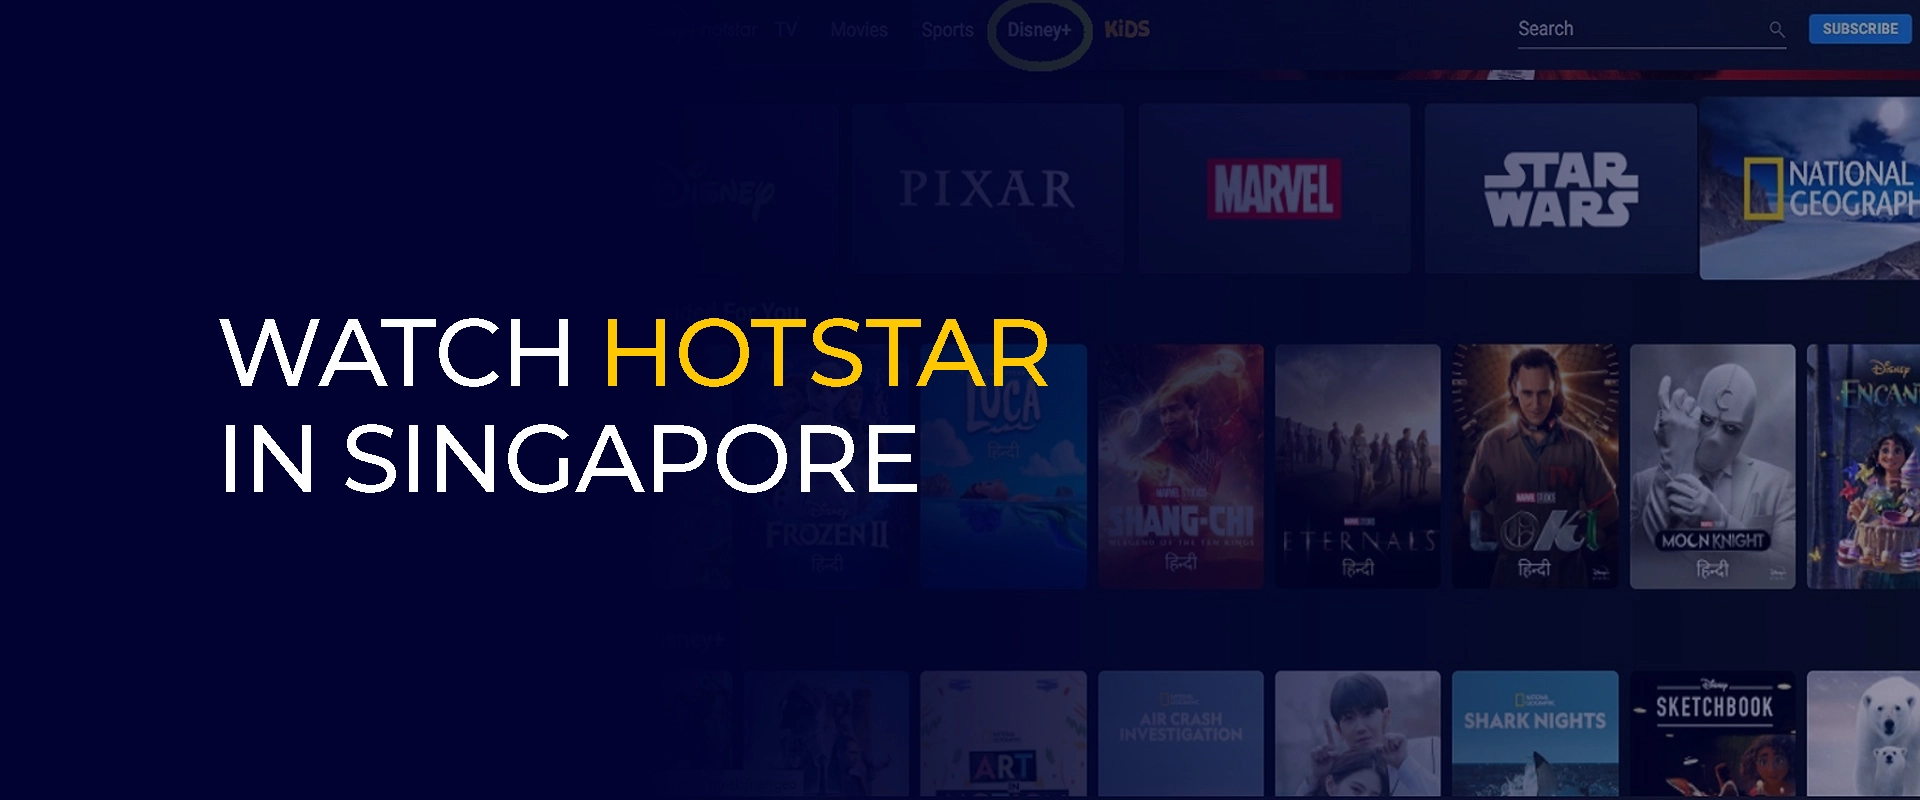 Se Hotstar i Singapore